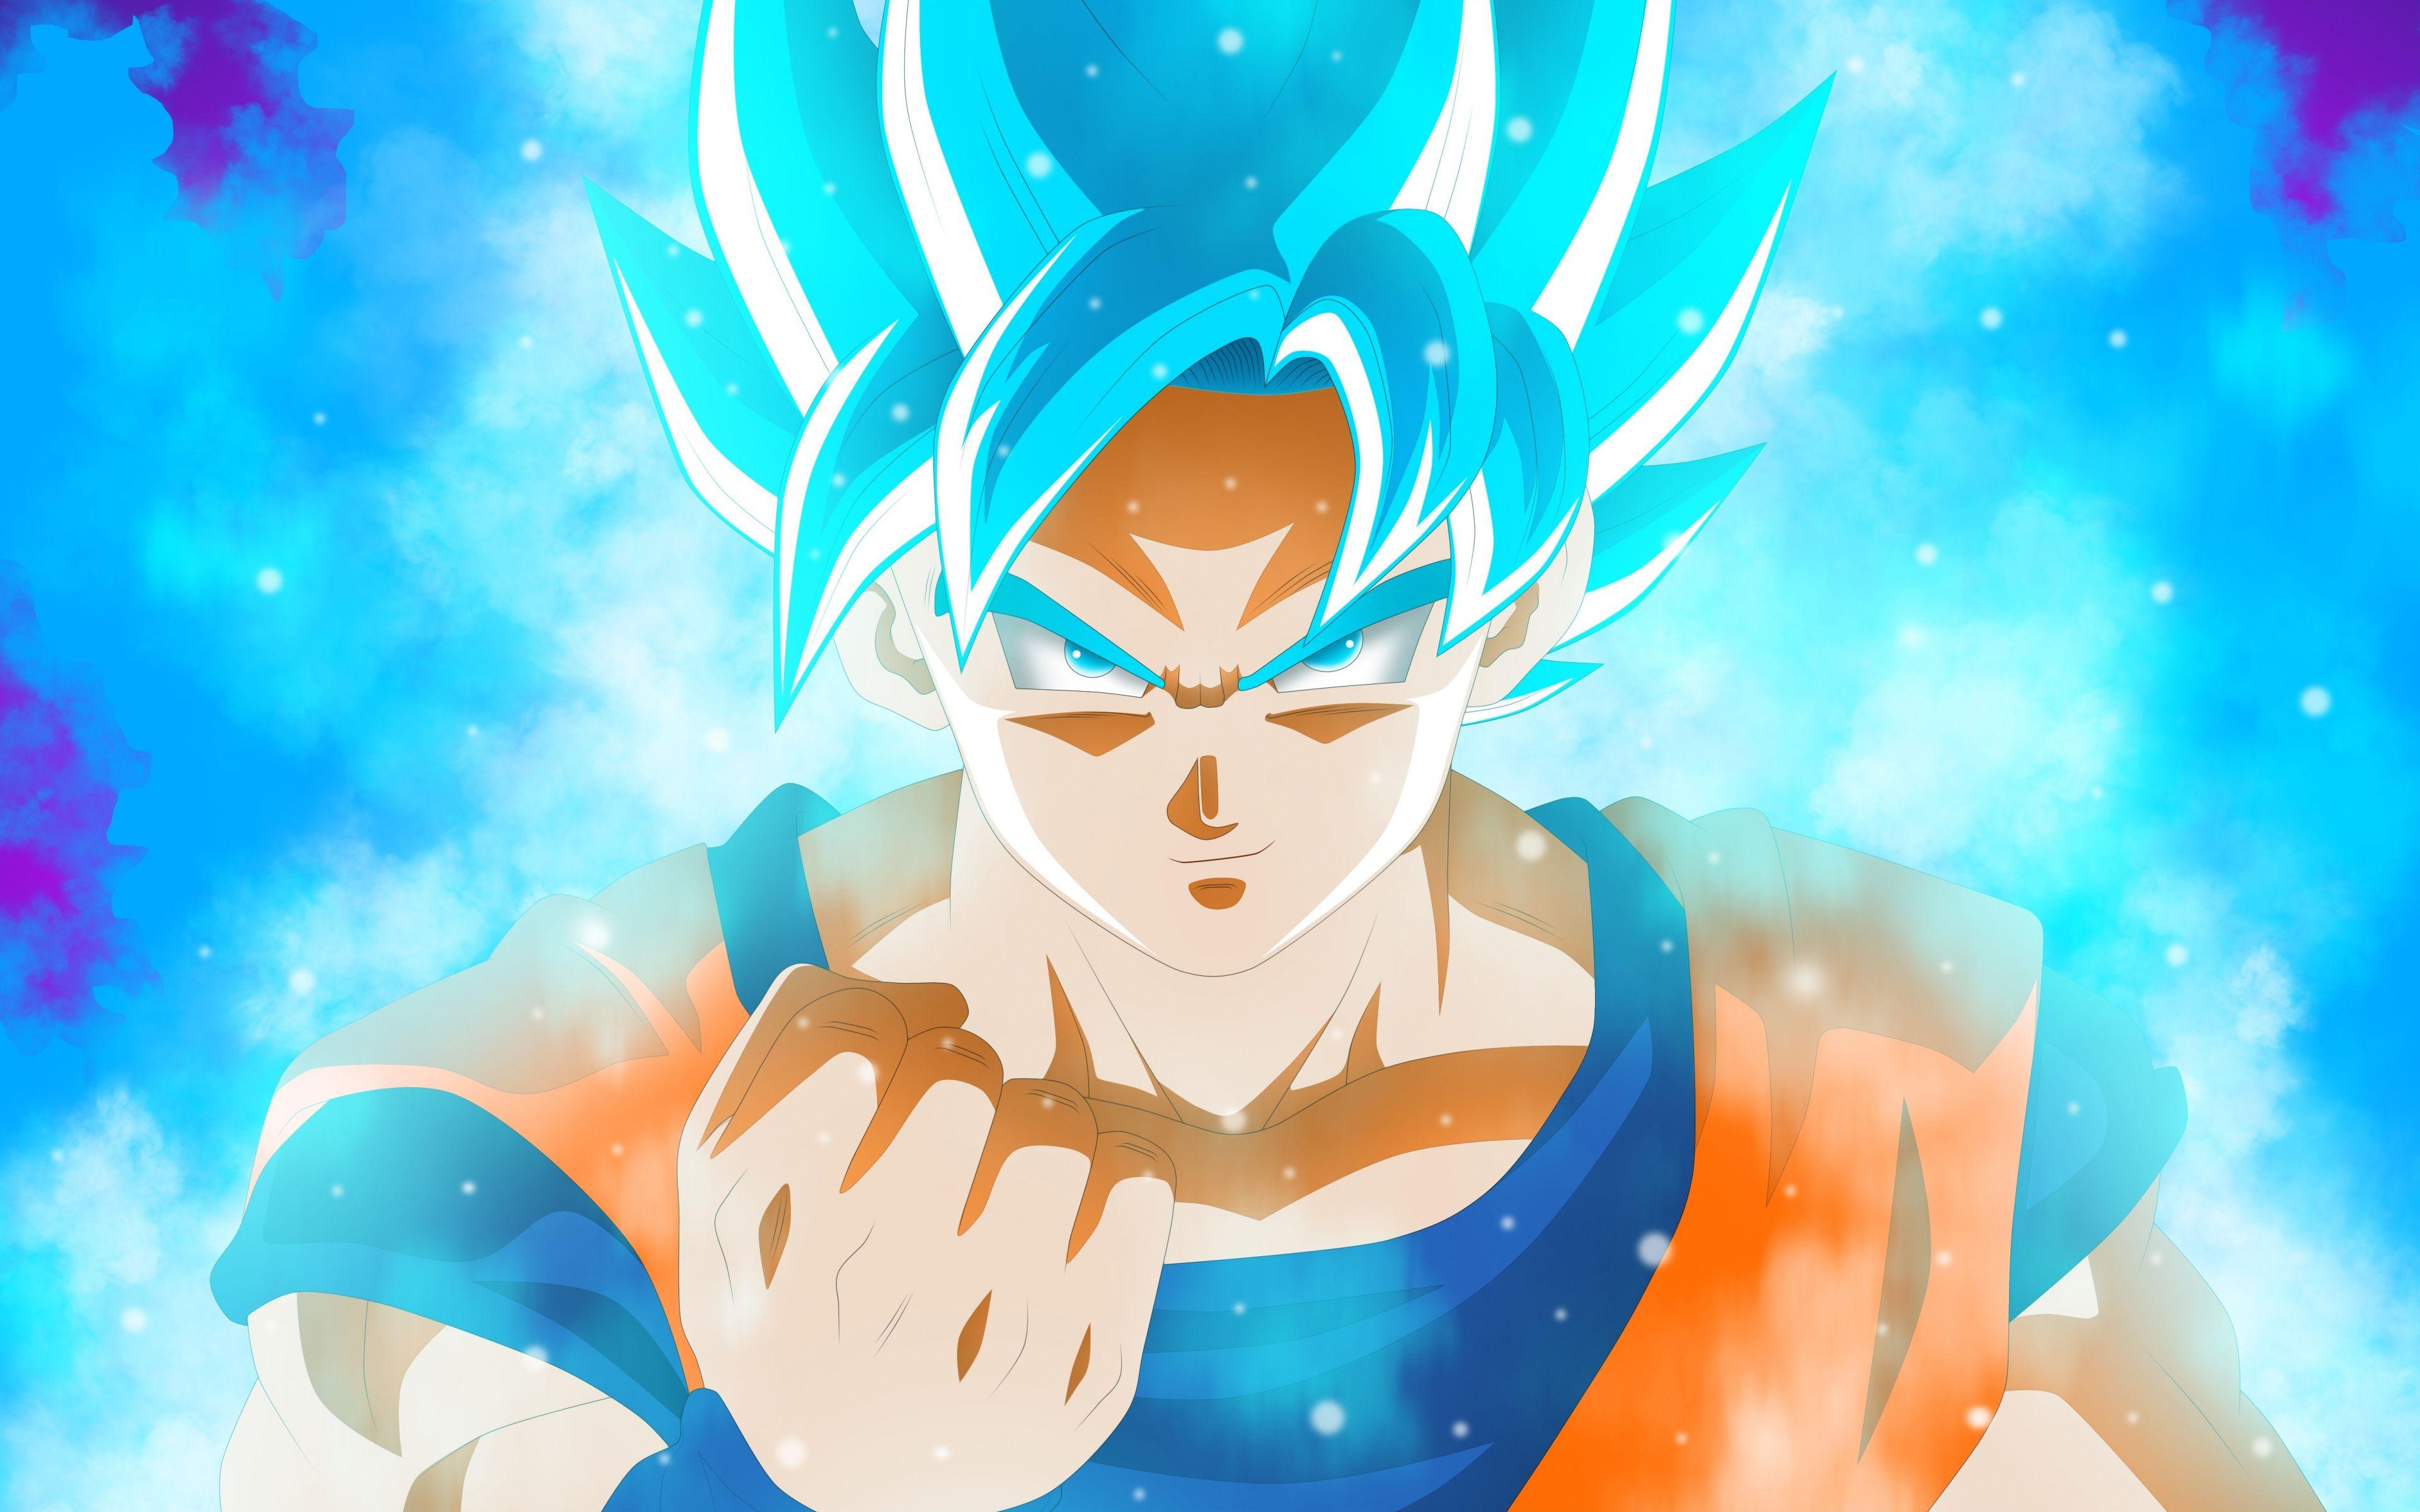 Goku 4K Ultra Hd Wallpapers - Top Free Goku 4K Ultra Hd Backgrounds